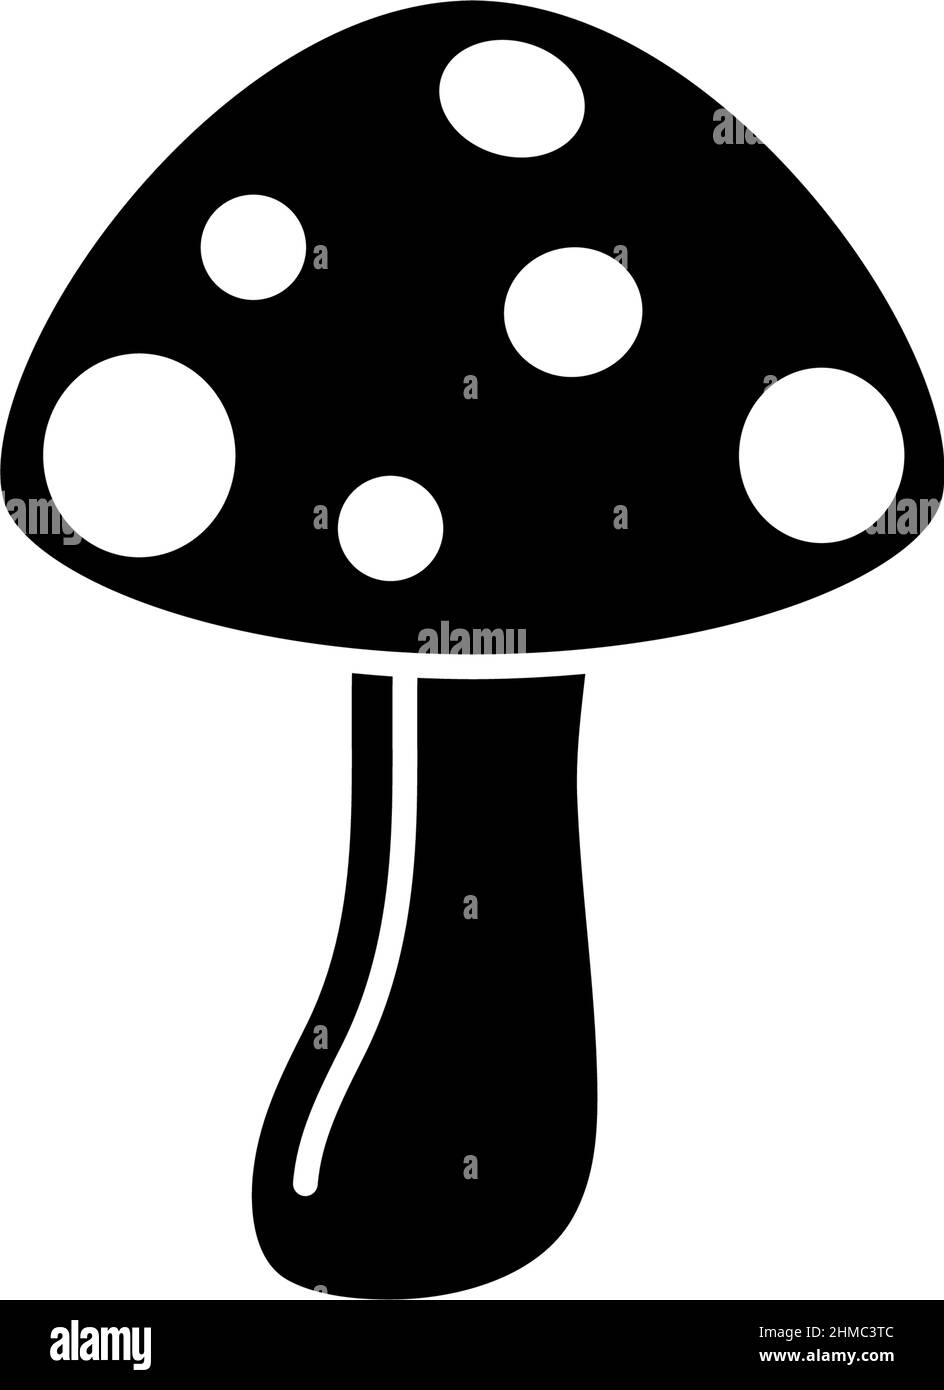 mario mushroom silhouette